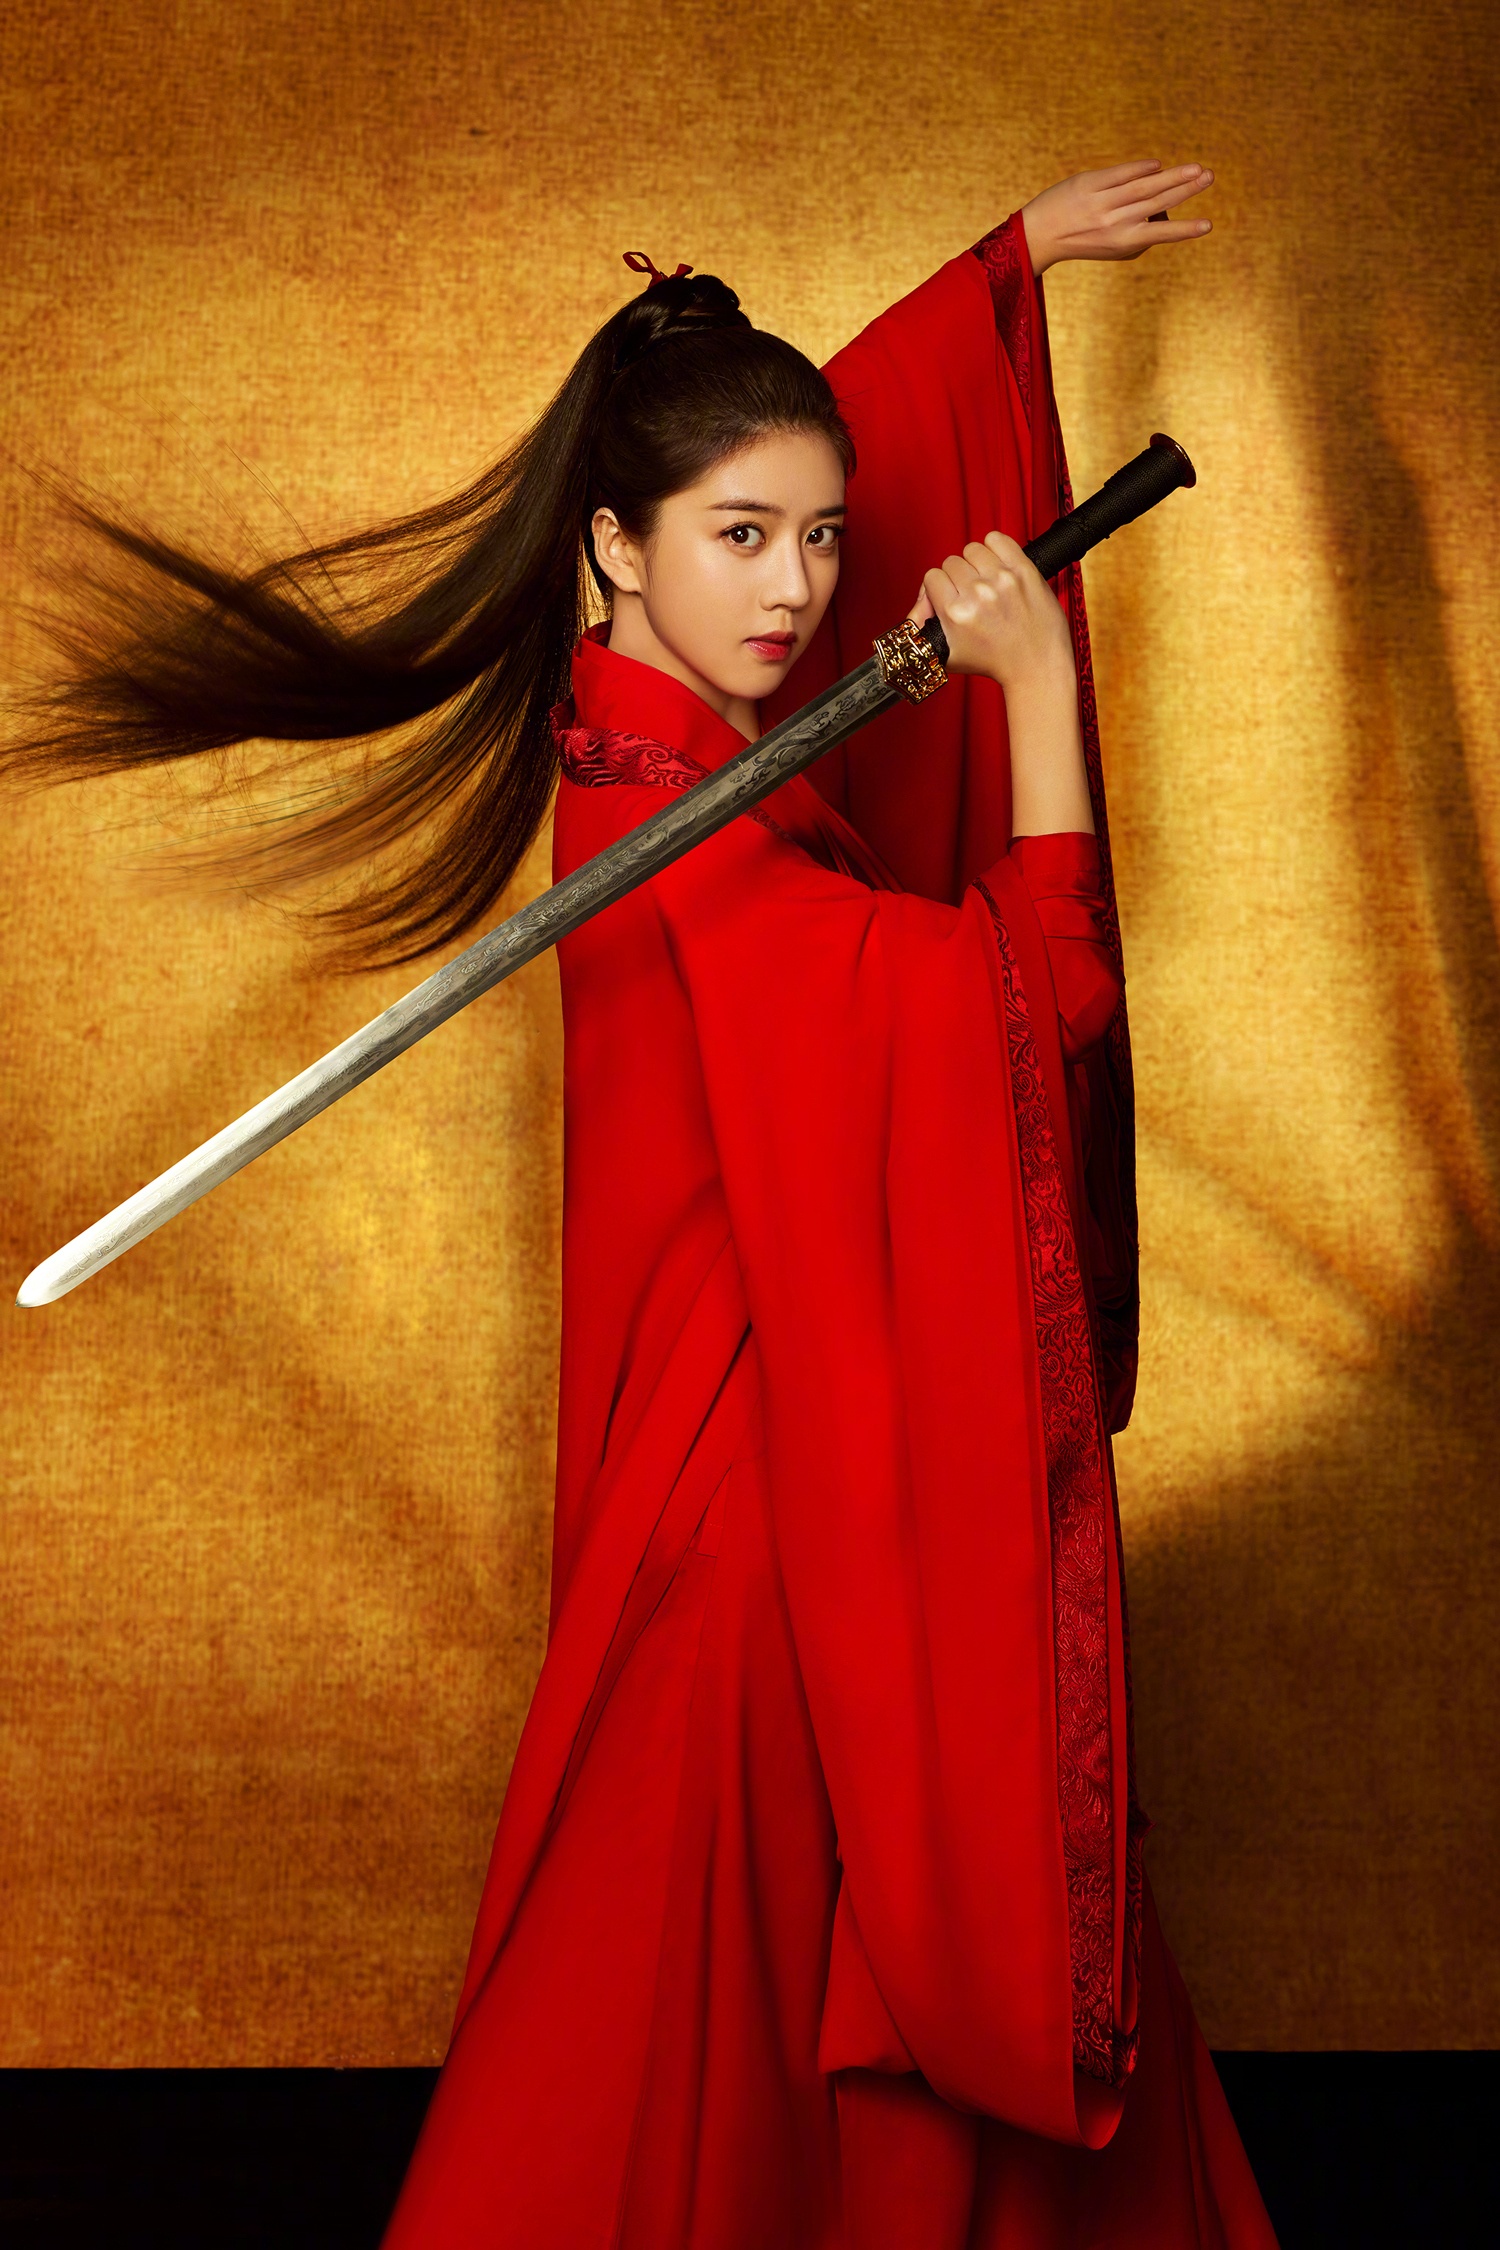 小花李凯馨新曝光的这组红衣女侠写真好霸气,高马尾简单利落,手持长剑